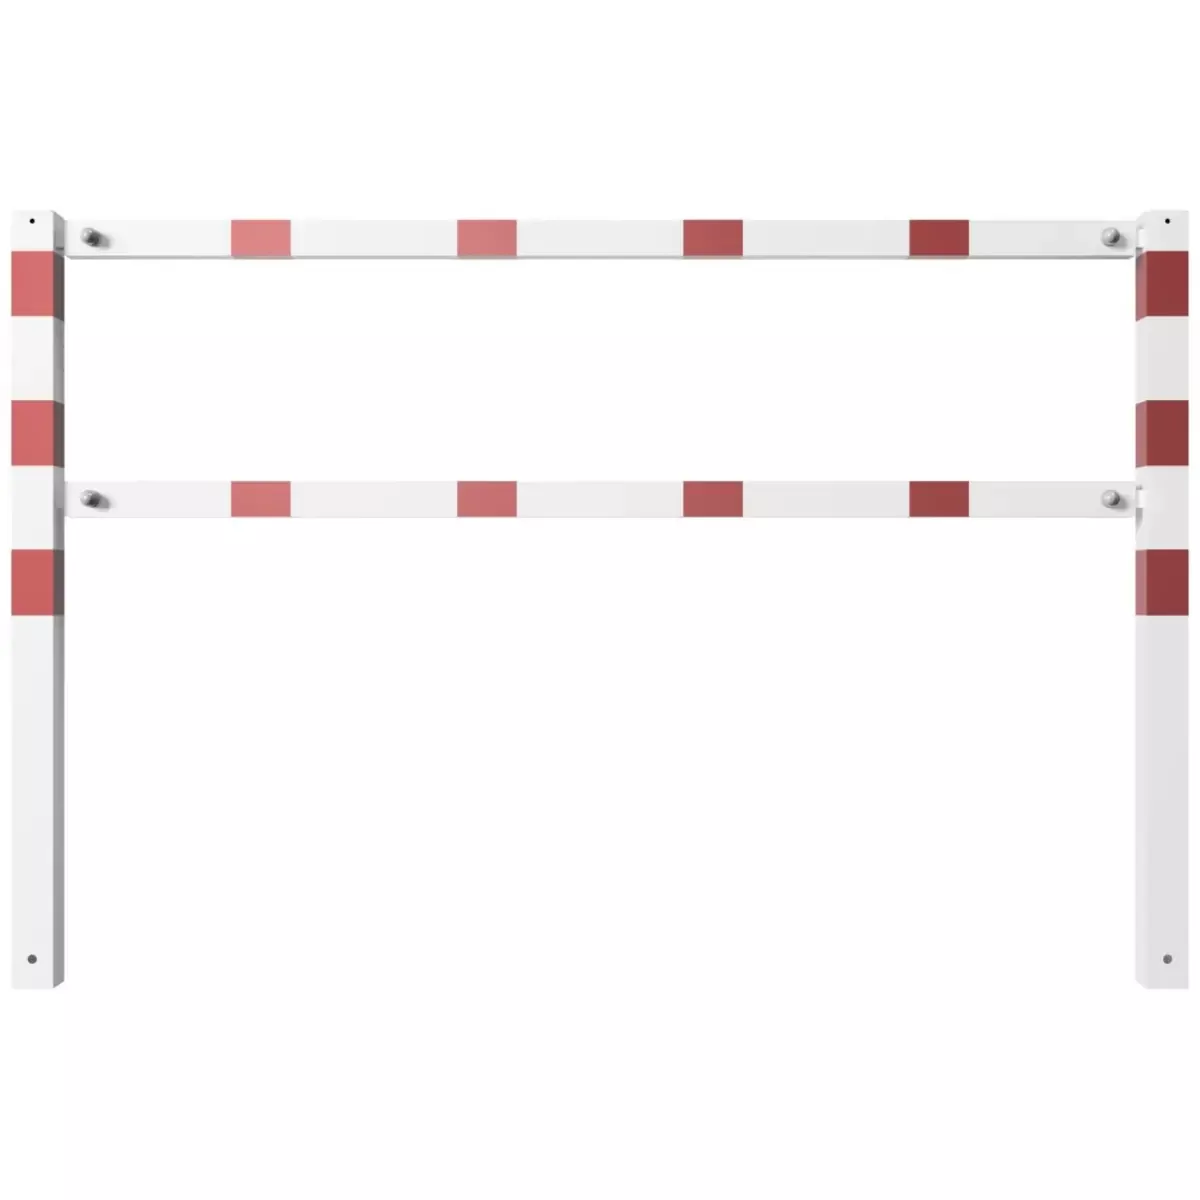 Wegesperren aus Vierkantrohr 70x70 mm mit Knieholm, Br.2000xH.900 mm, weiß - rot, zusammenschraubbar